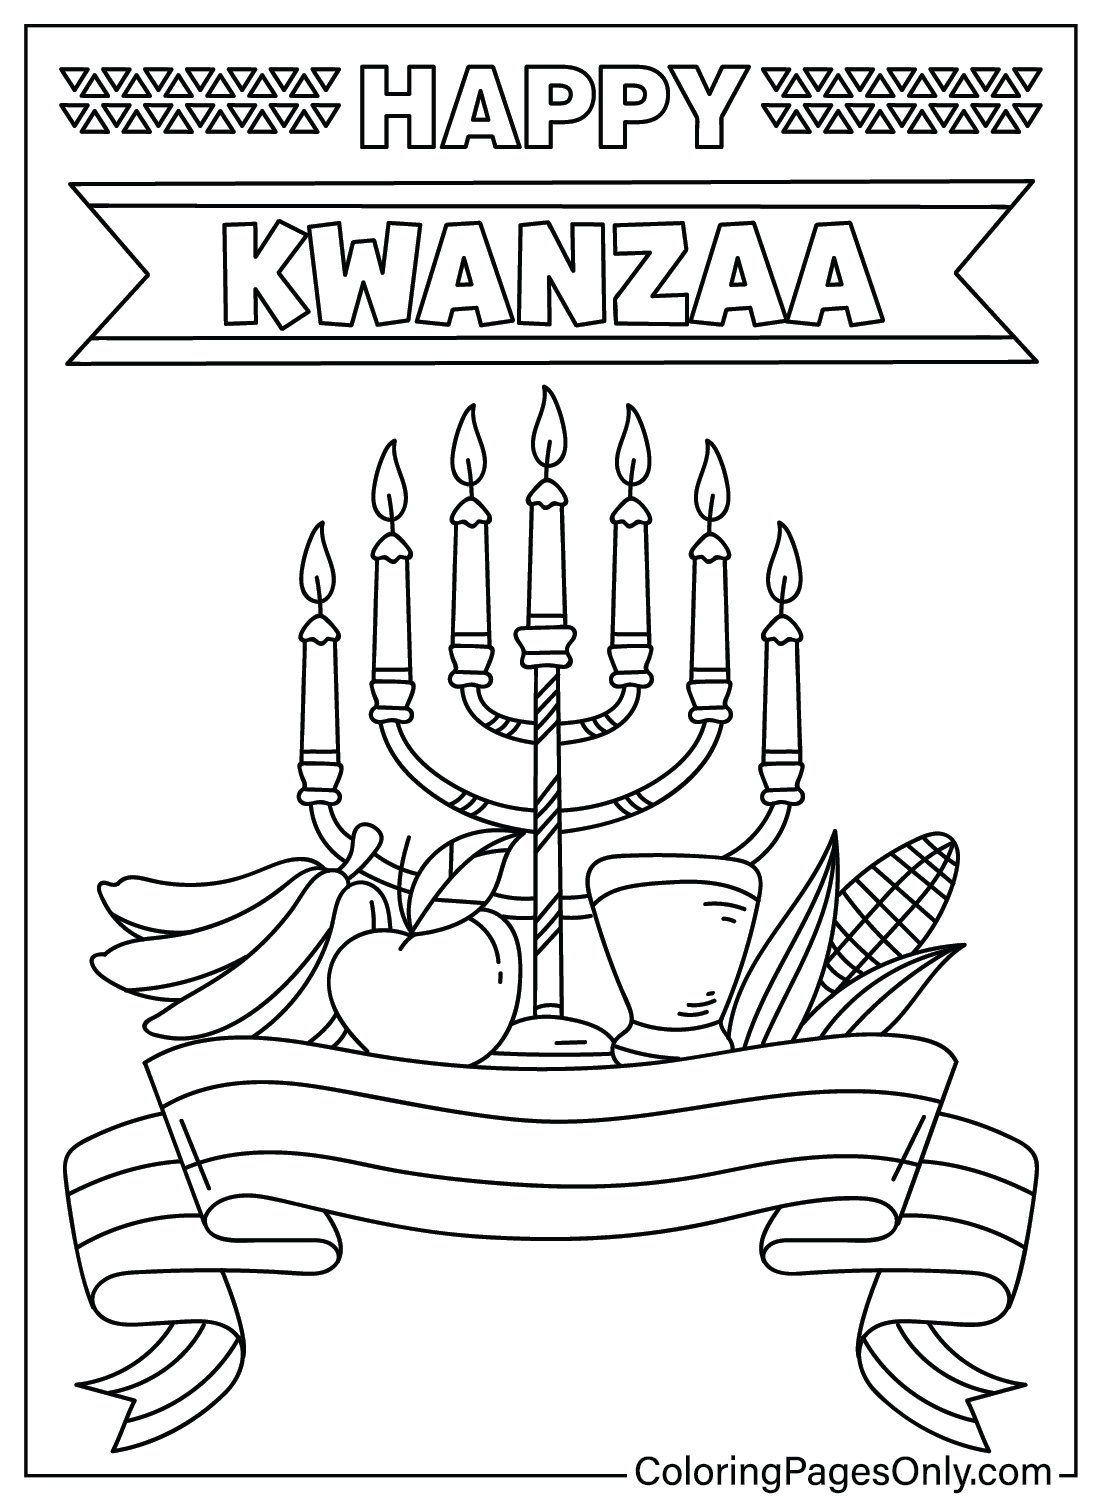 Página para colorear de Kwanzaa imprimible de Kwanzaa